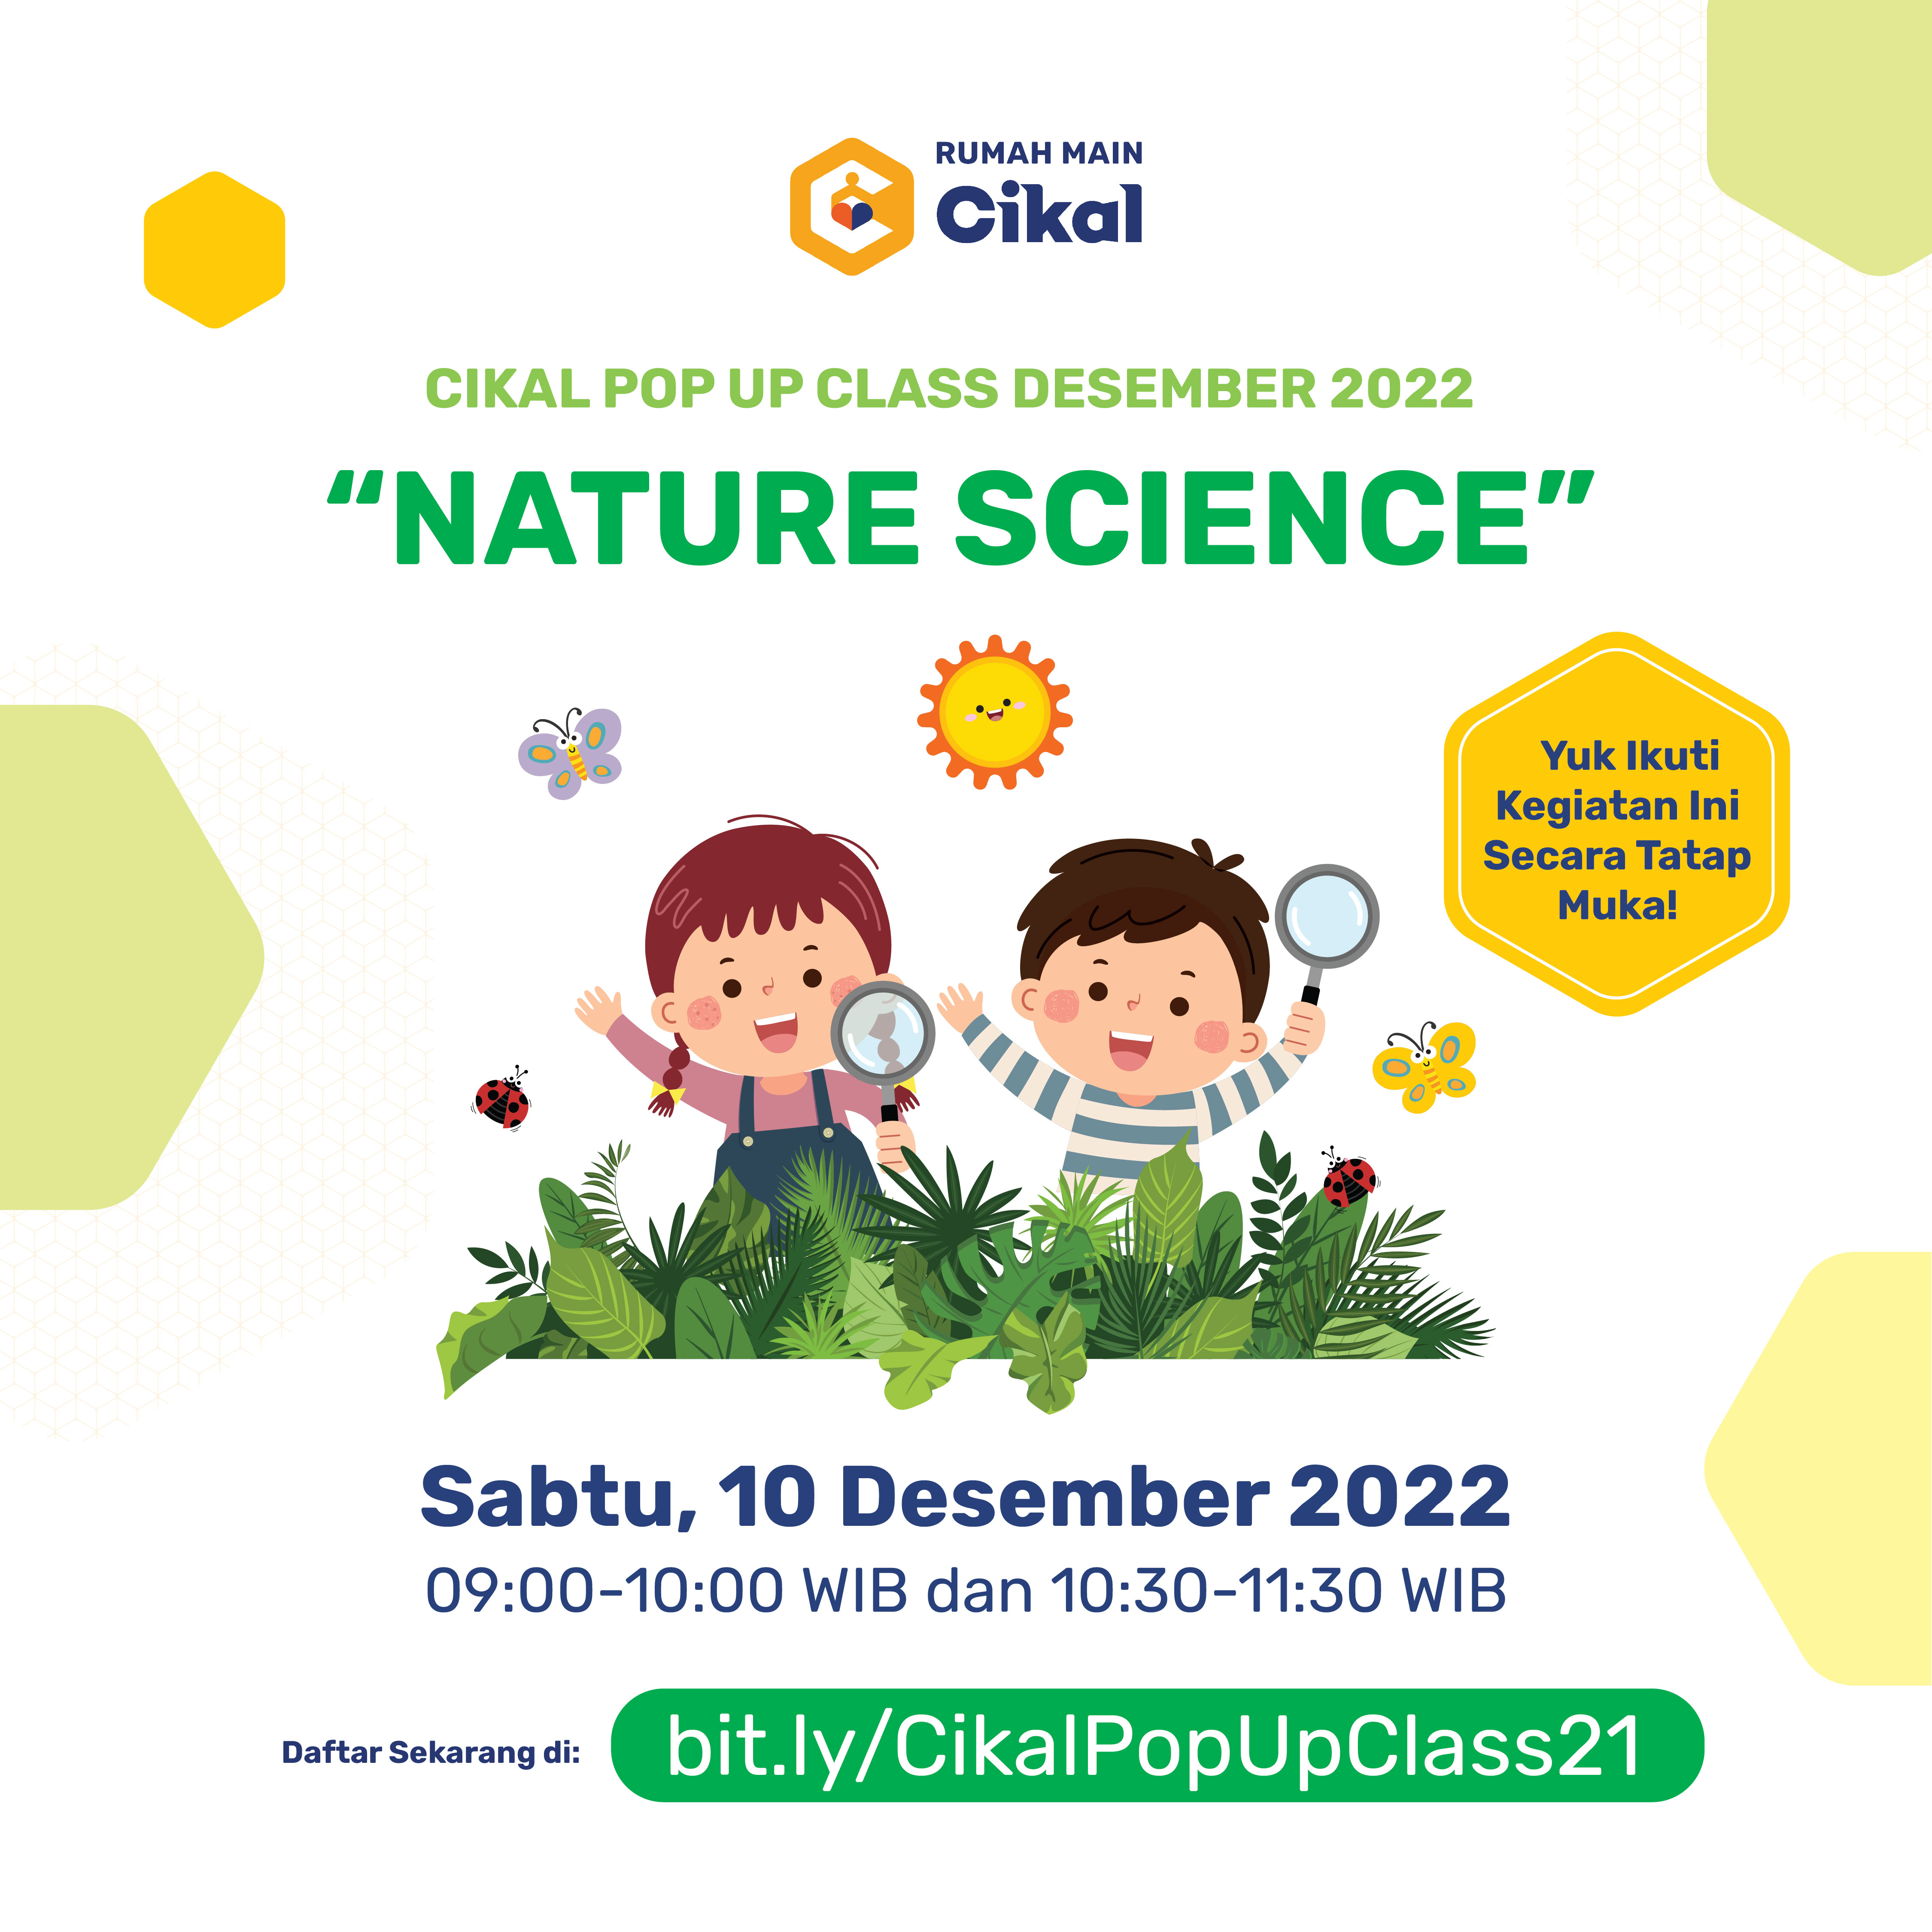 Cikal Pop Up Class Rumah Main Cikal (Edisi Desember 2022)